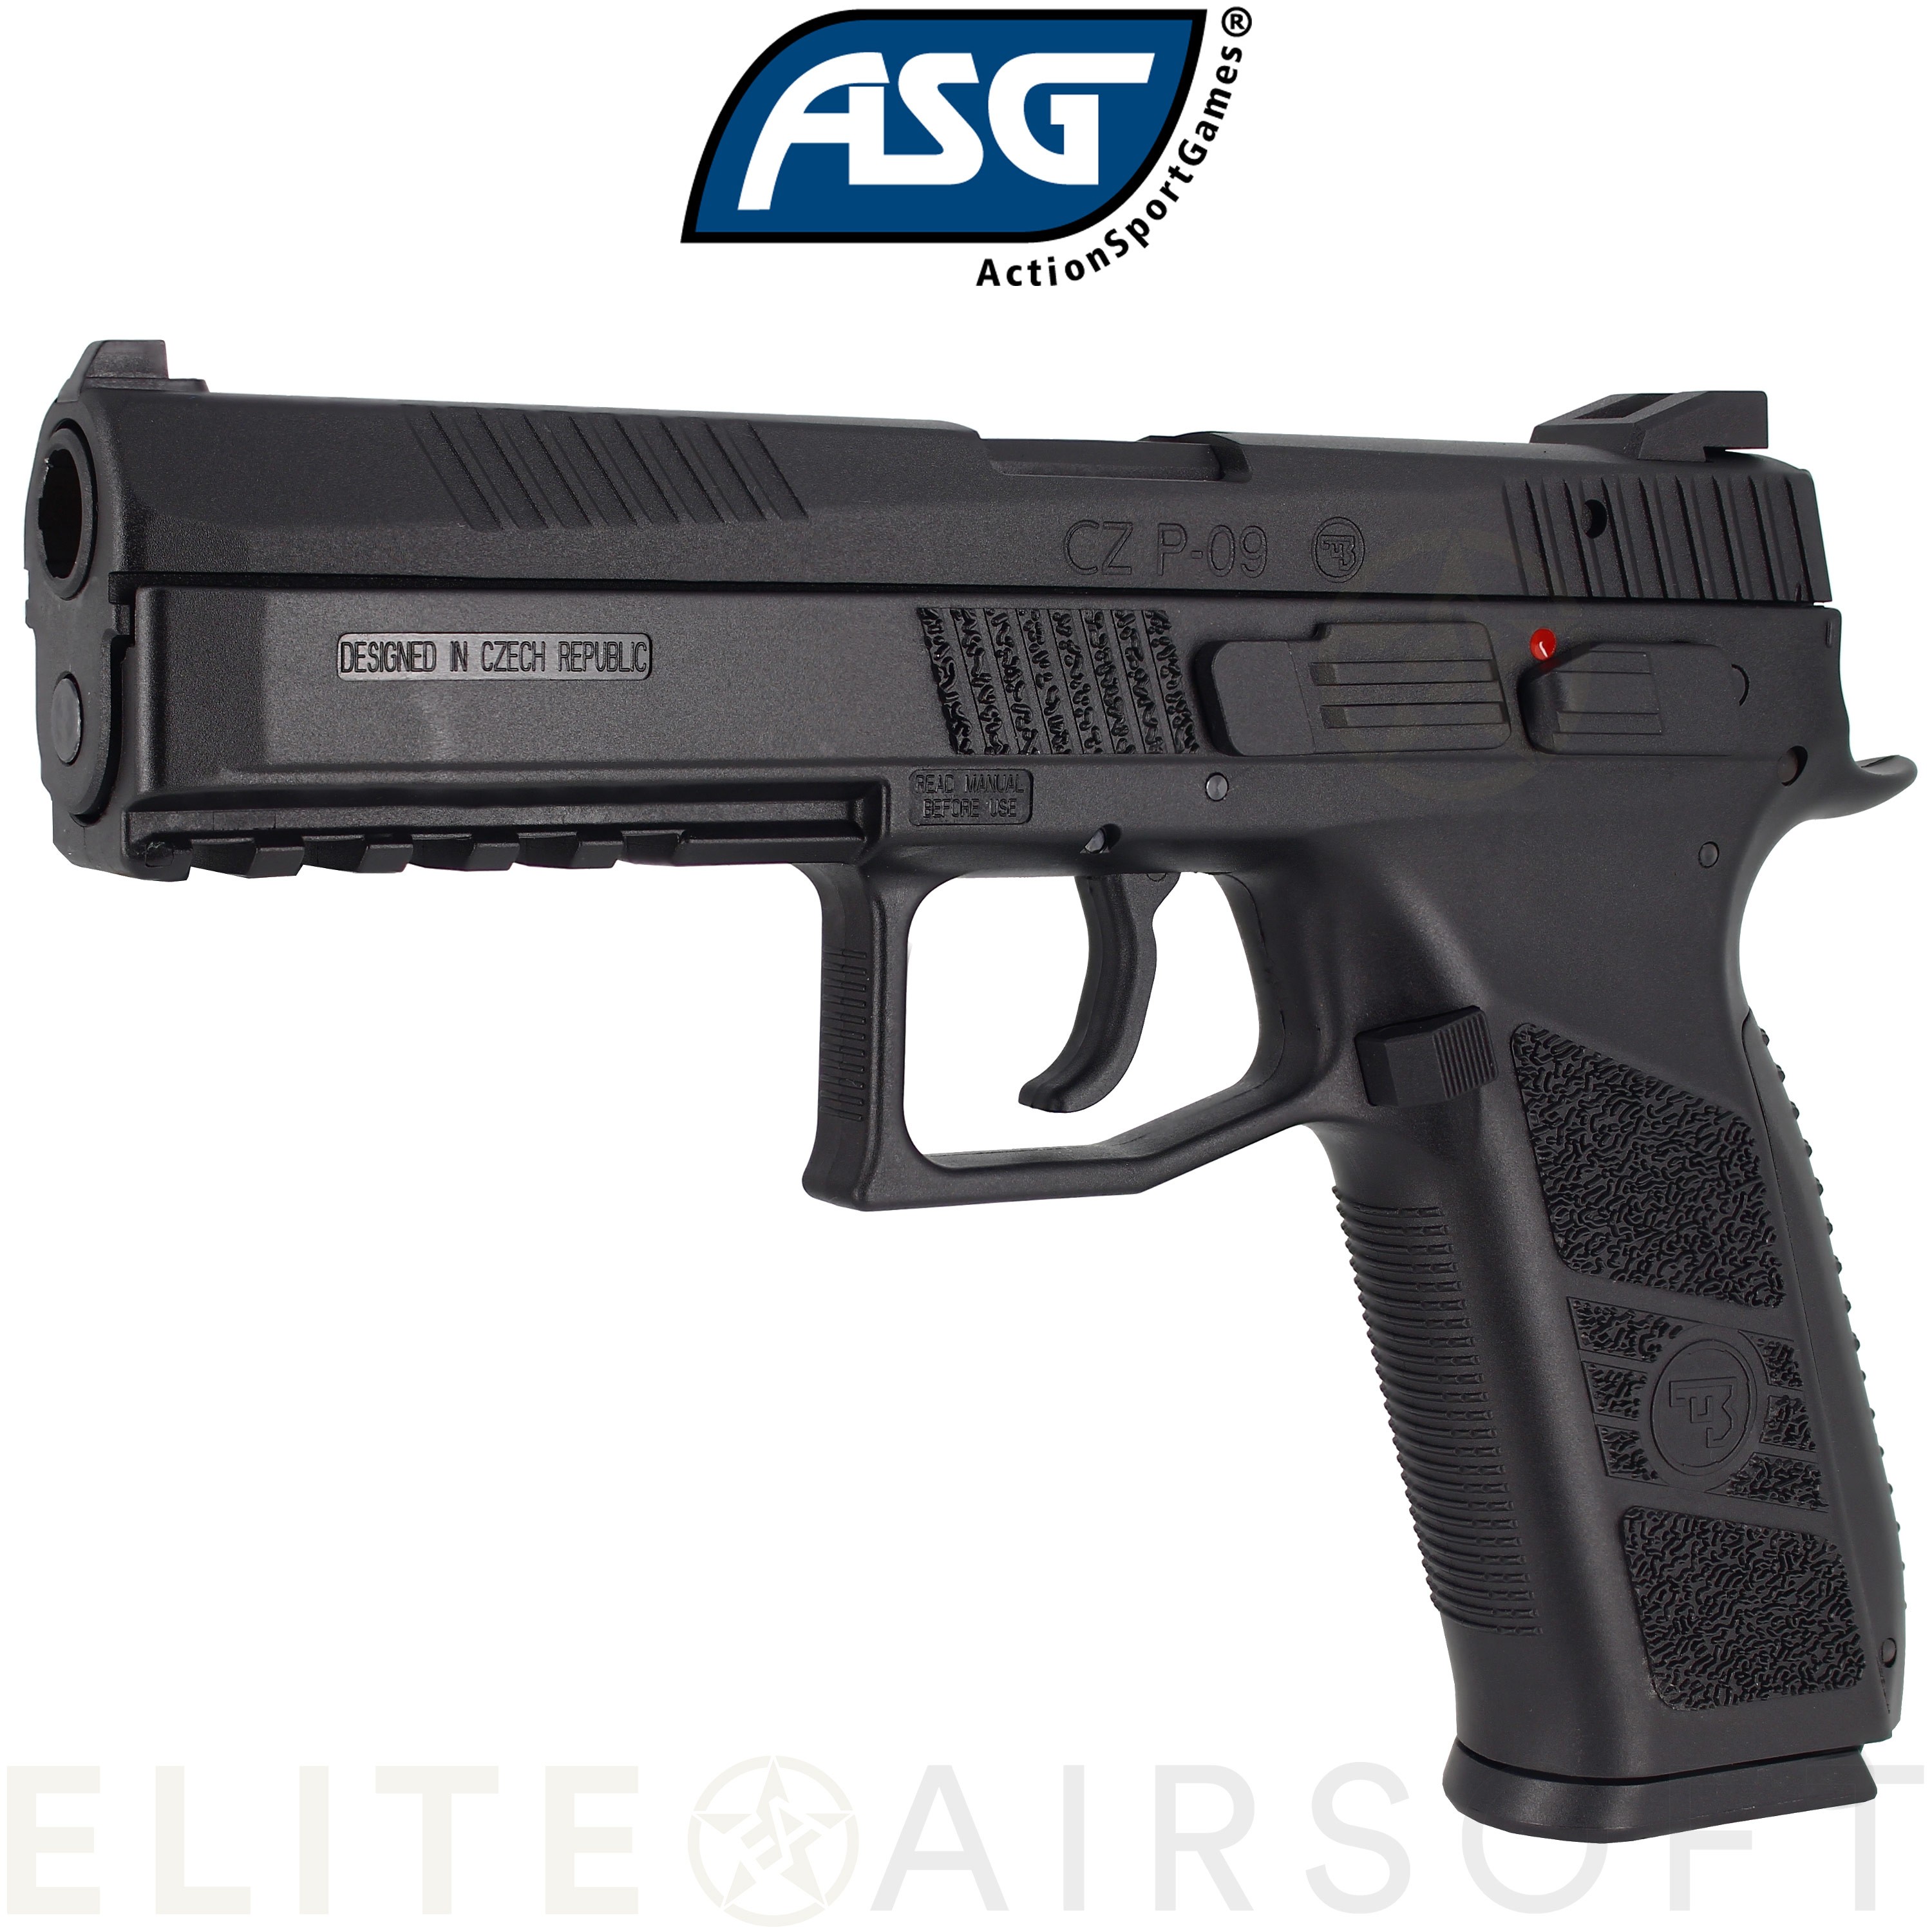 ASG - Pistolet CZ P-09 - GBB - Gaz - Noir (1 joules)